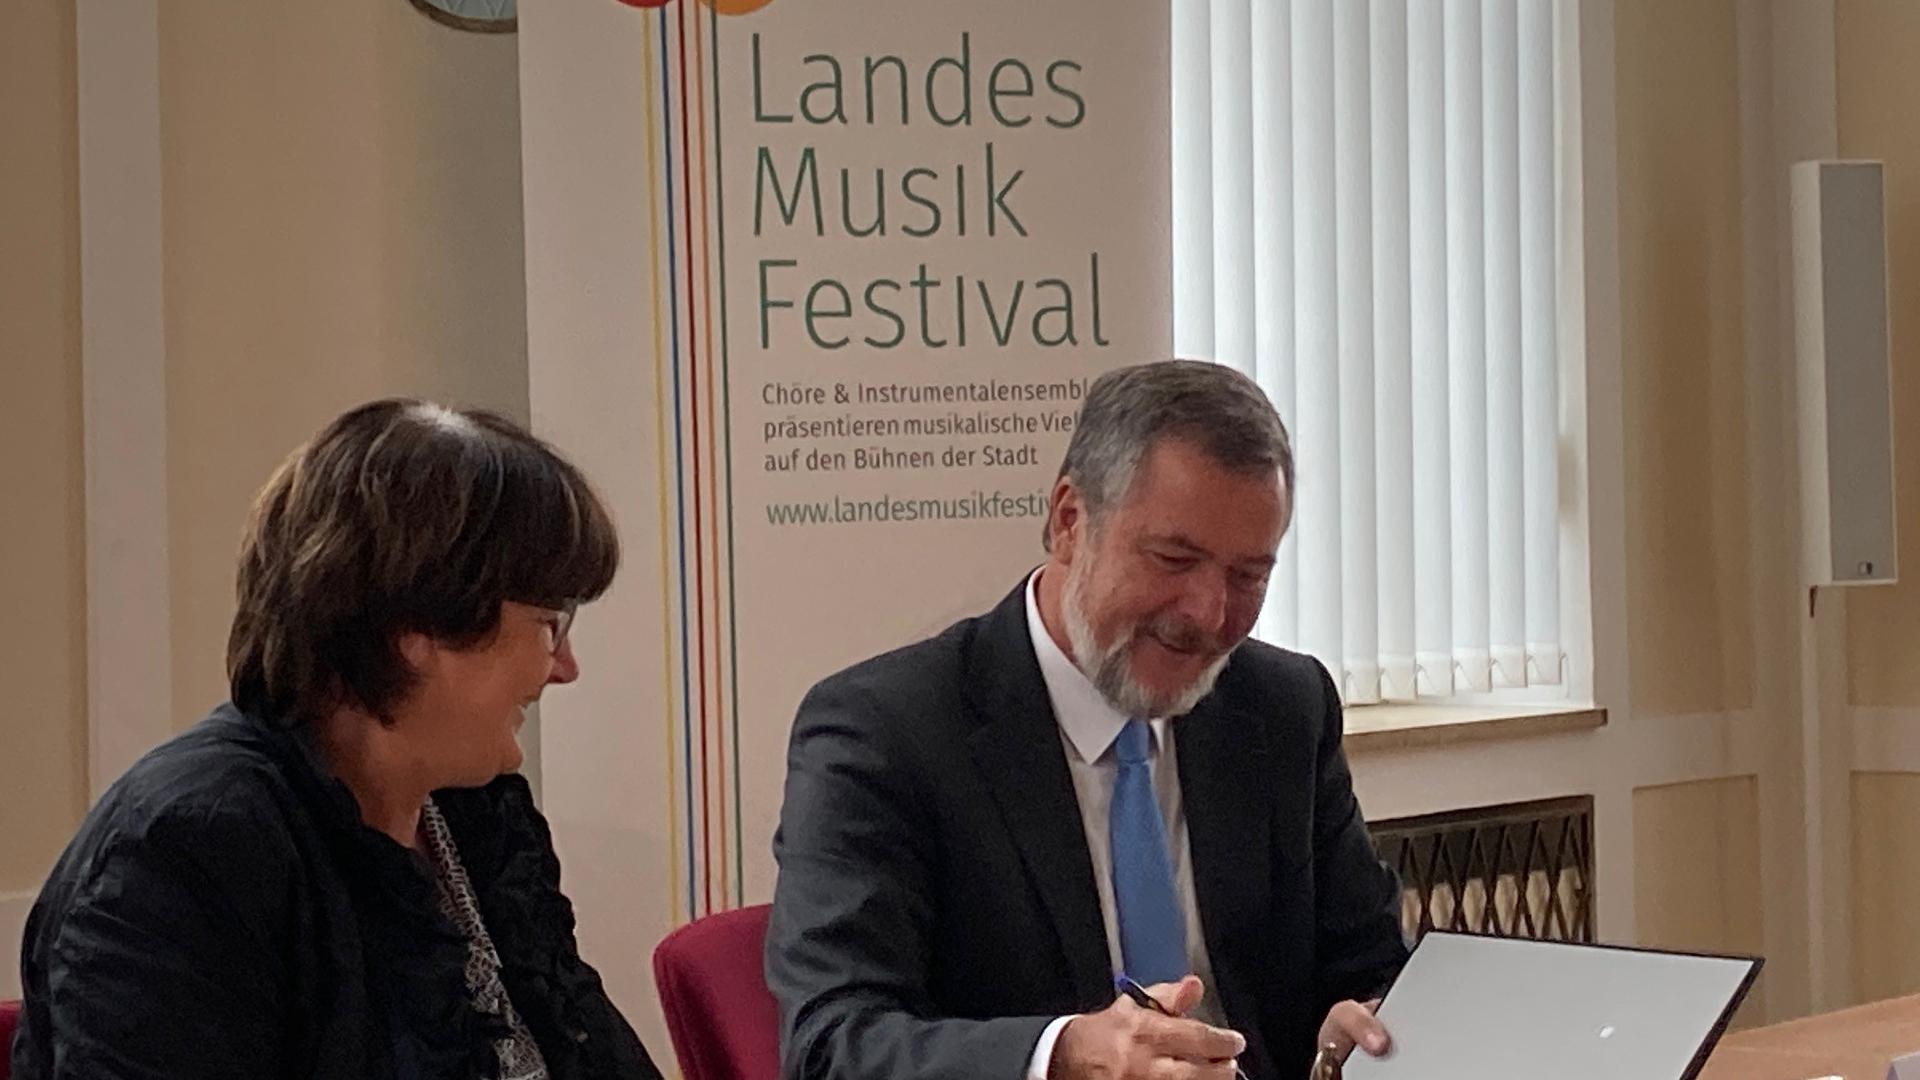 Vertrag für den Musikfestival unterzeichnet: Bruchsals Oberbürgermeisterin Cornelia Petzold-Schick und Christoph Palm, Präsident des Landesmusikverbands Baden-Württemberg.